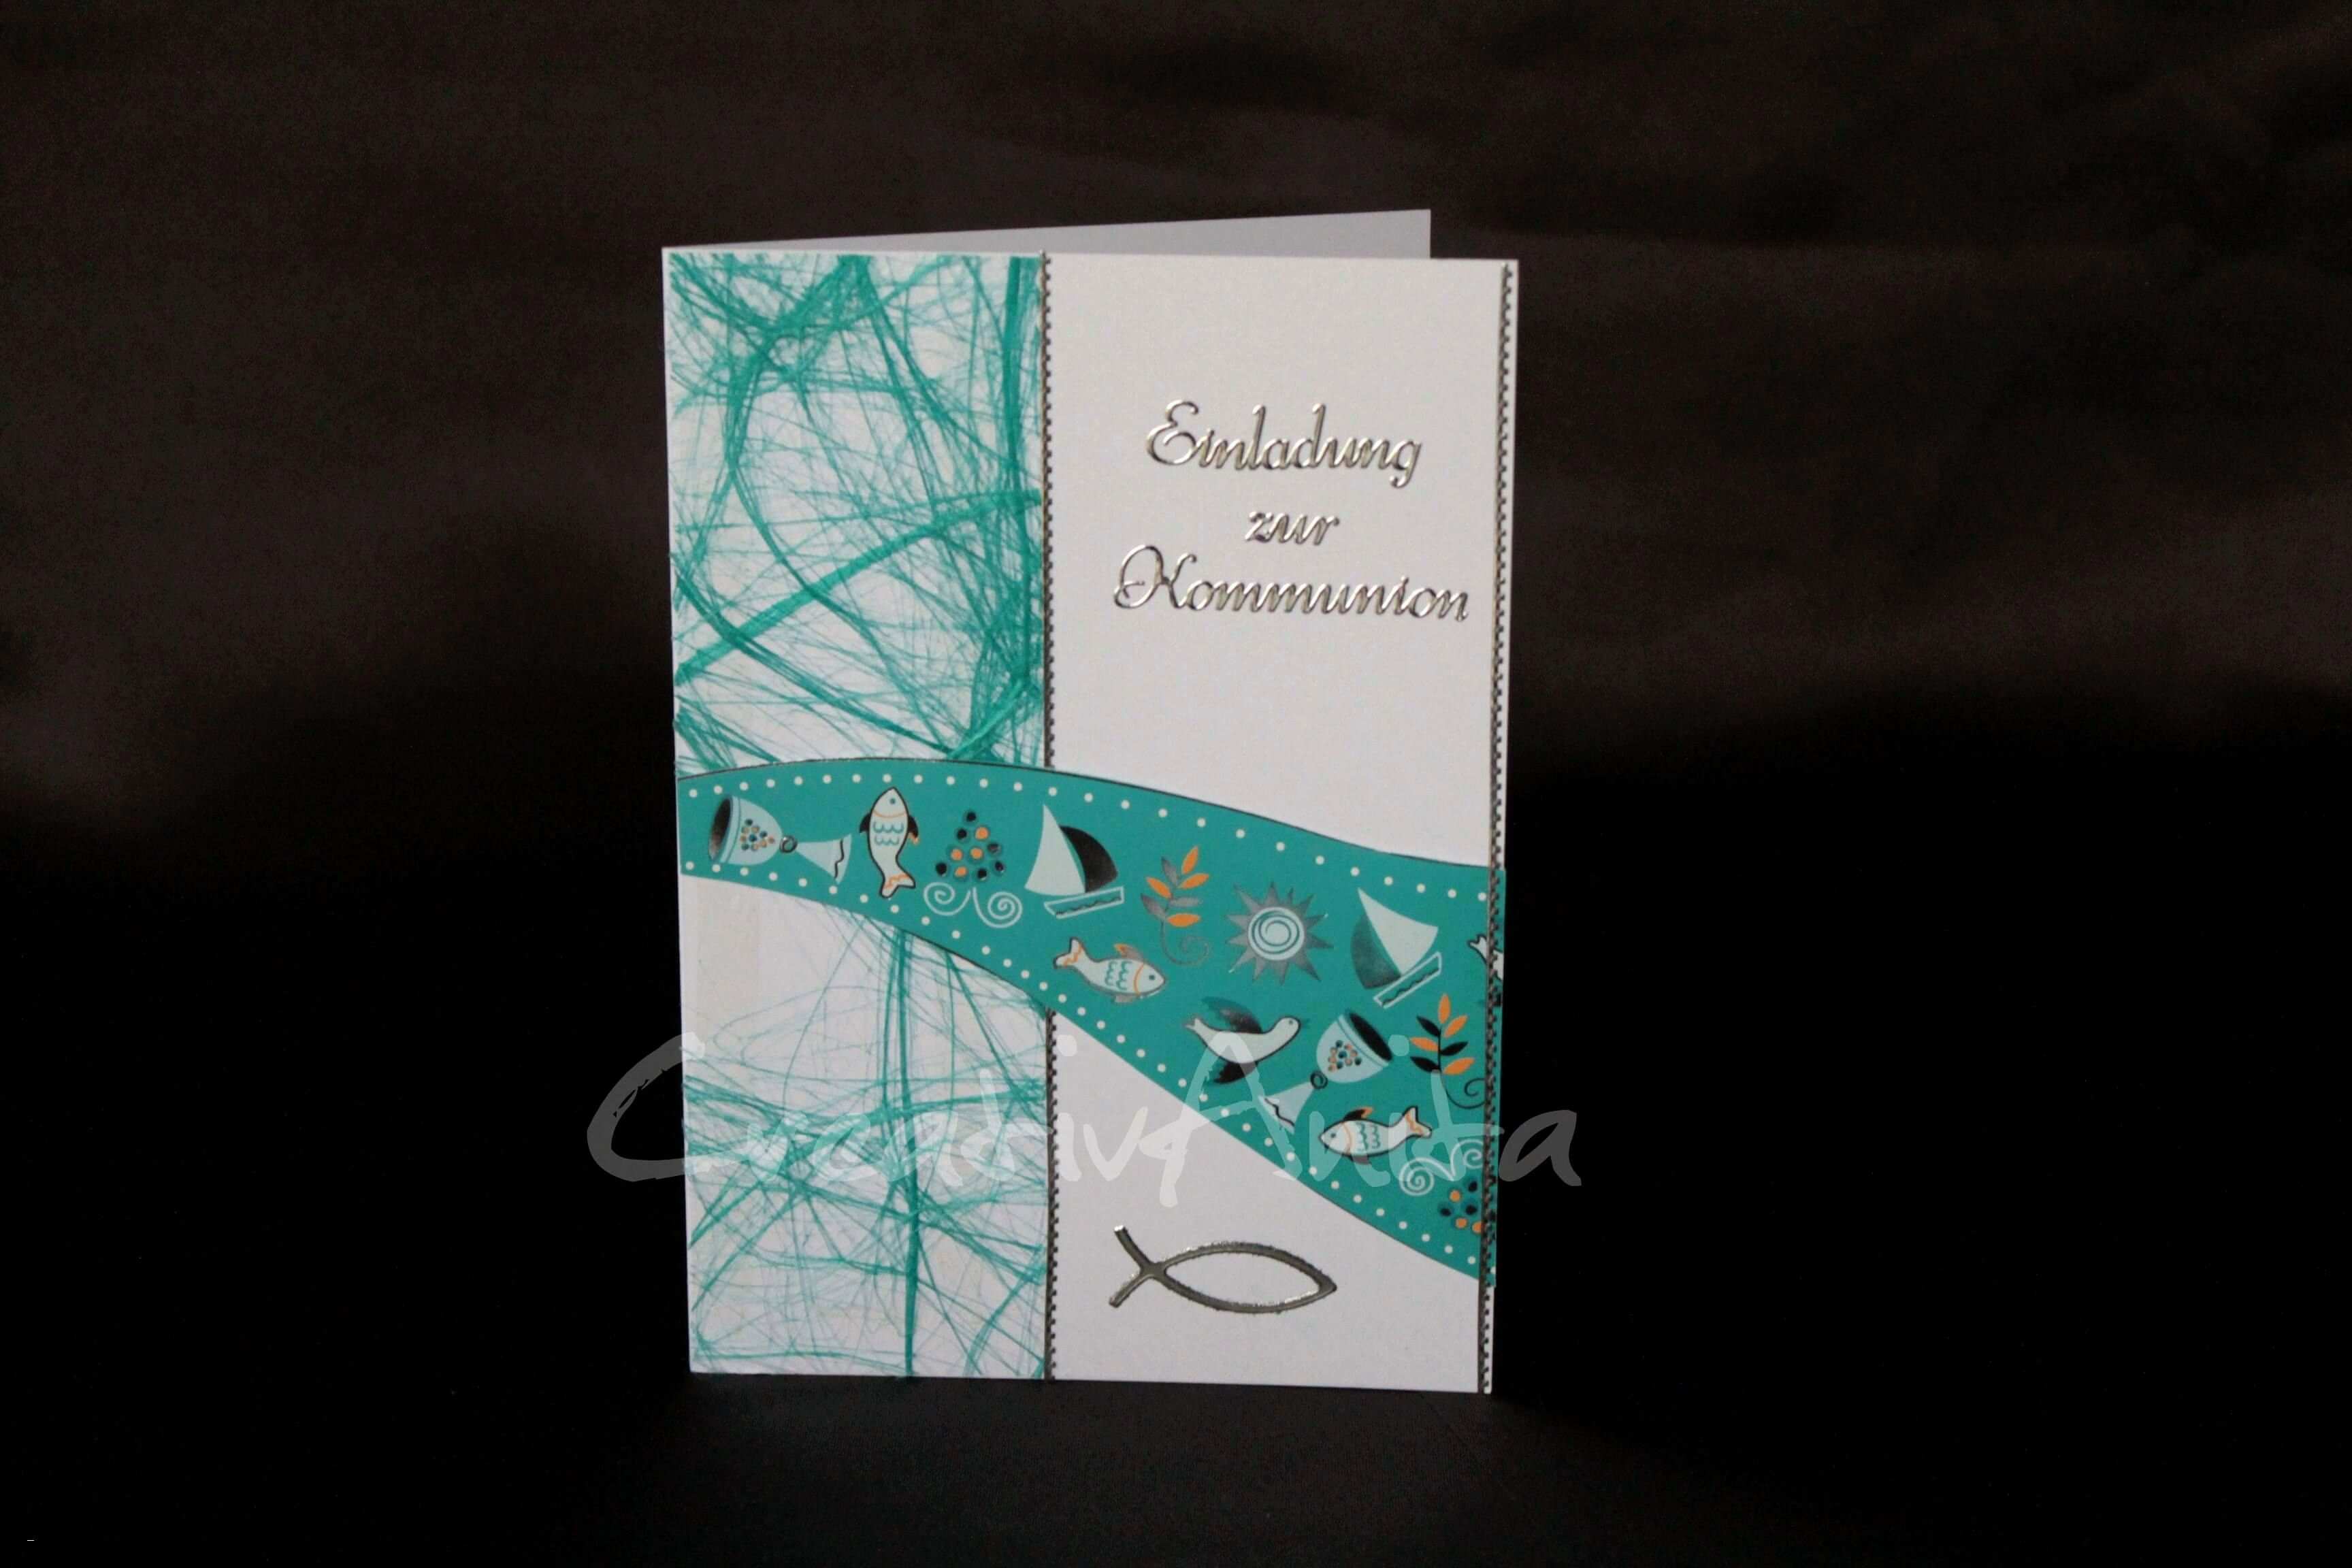 52 Luxus Galerie Von Kommunion Karten Basteln Tellerdreher Net Einladungskarten Kommunion Selber Machen Einladungskarten Kommunion Karten Basteln Hochzeit